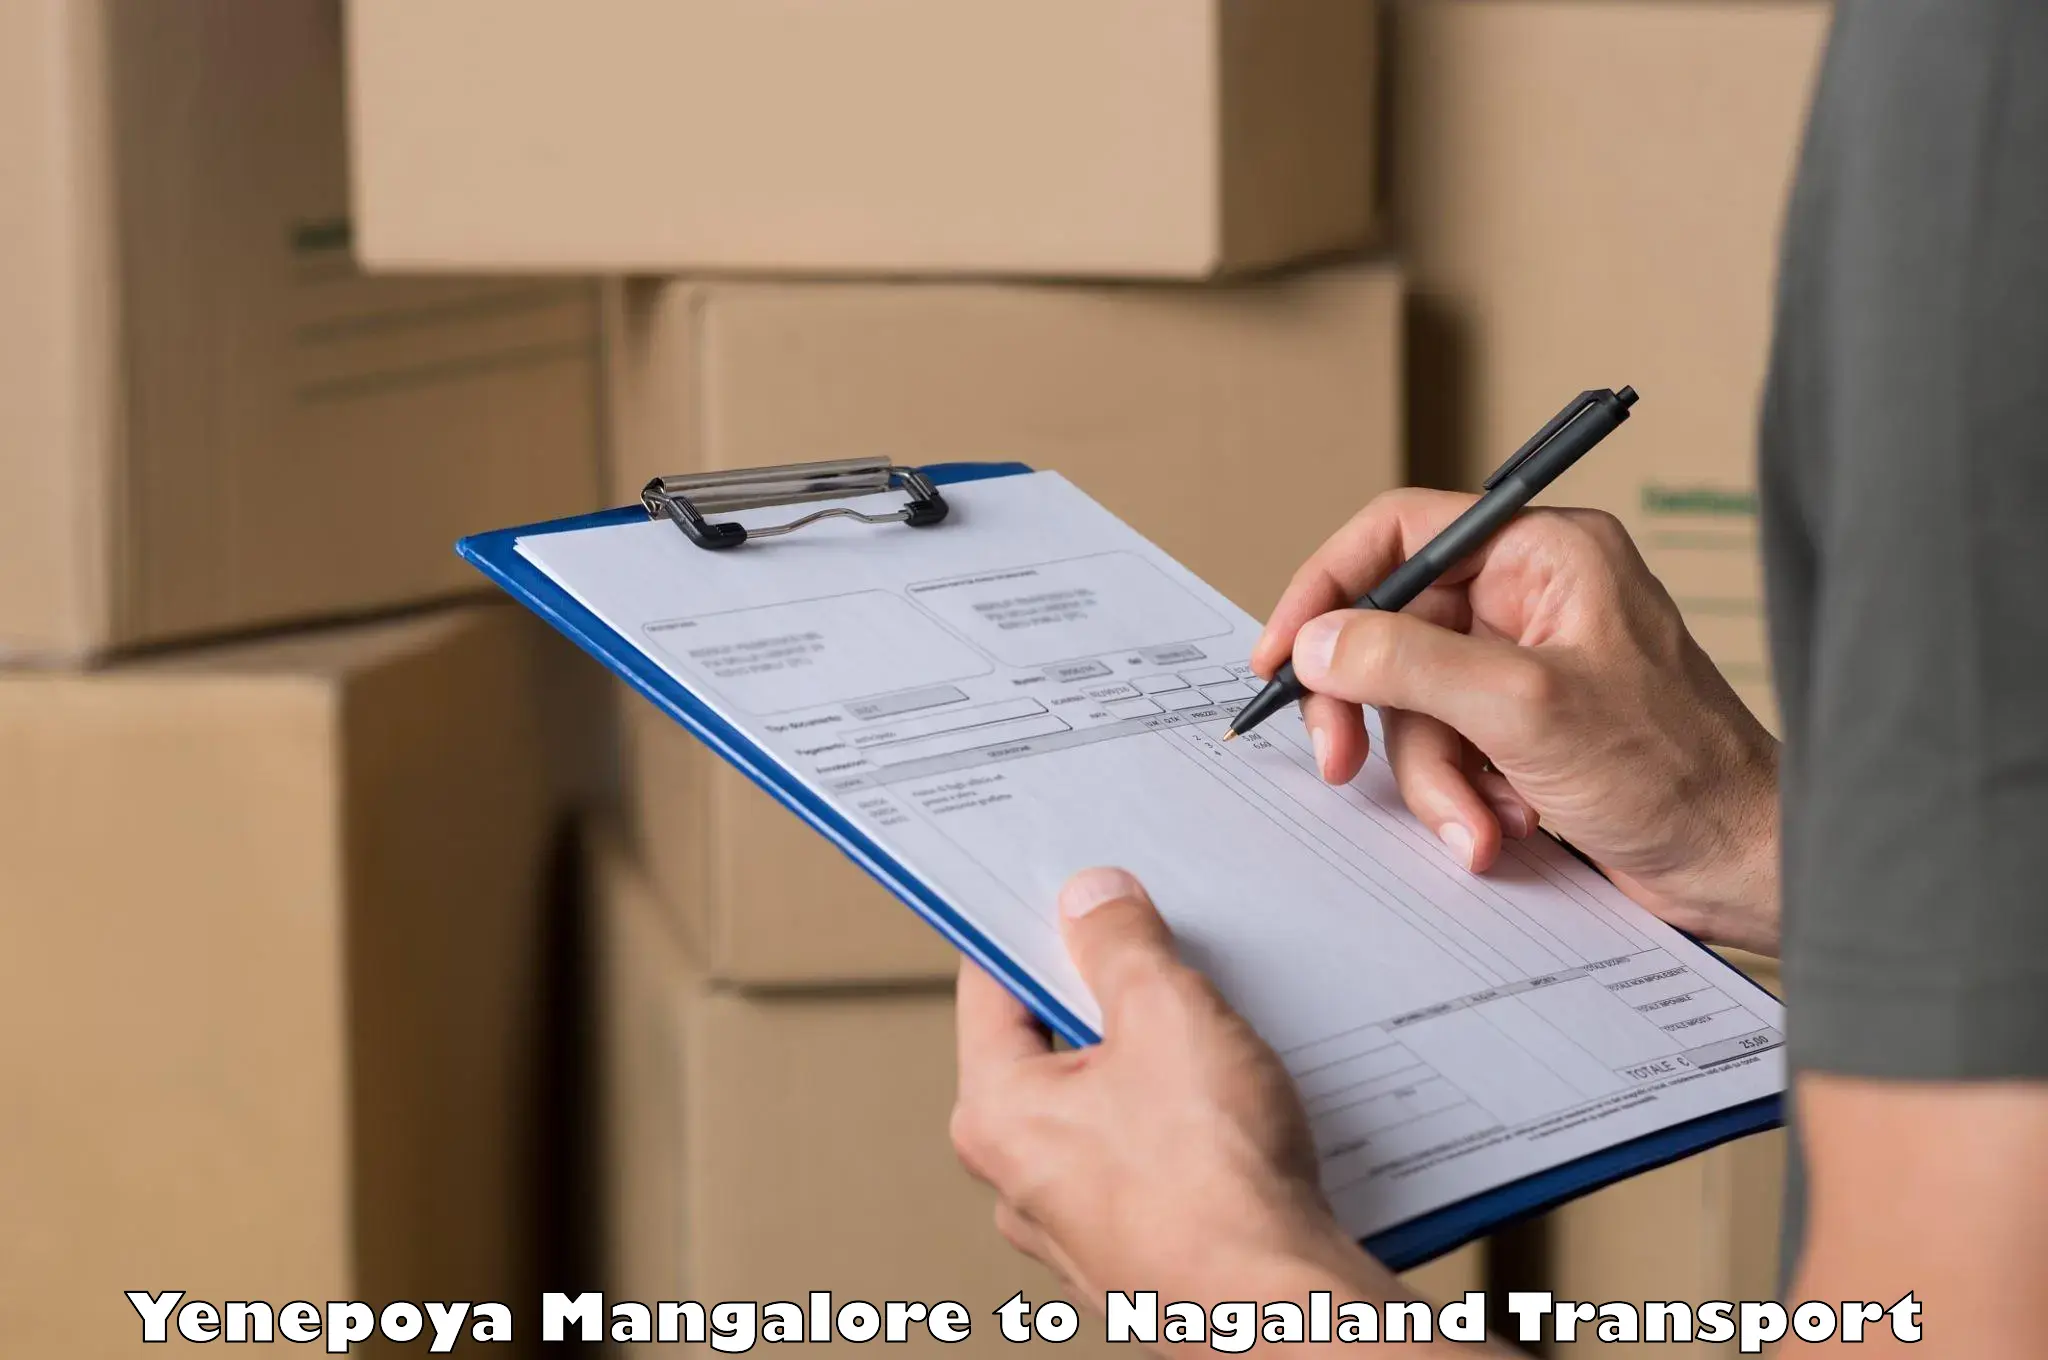 Container transport service Yenepoya Mangalore to Longleng